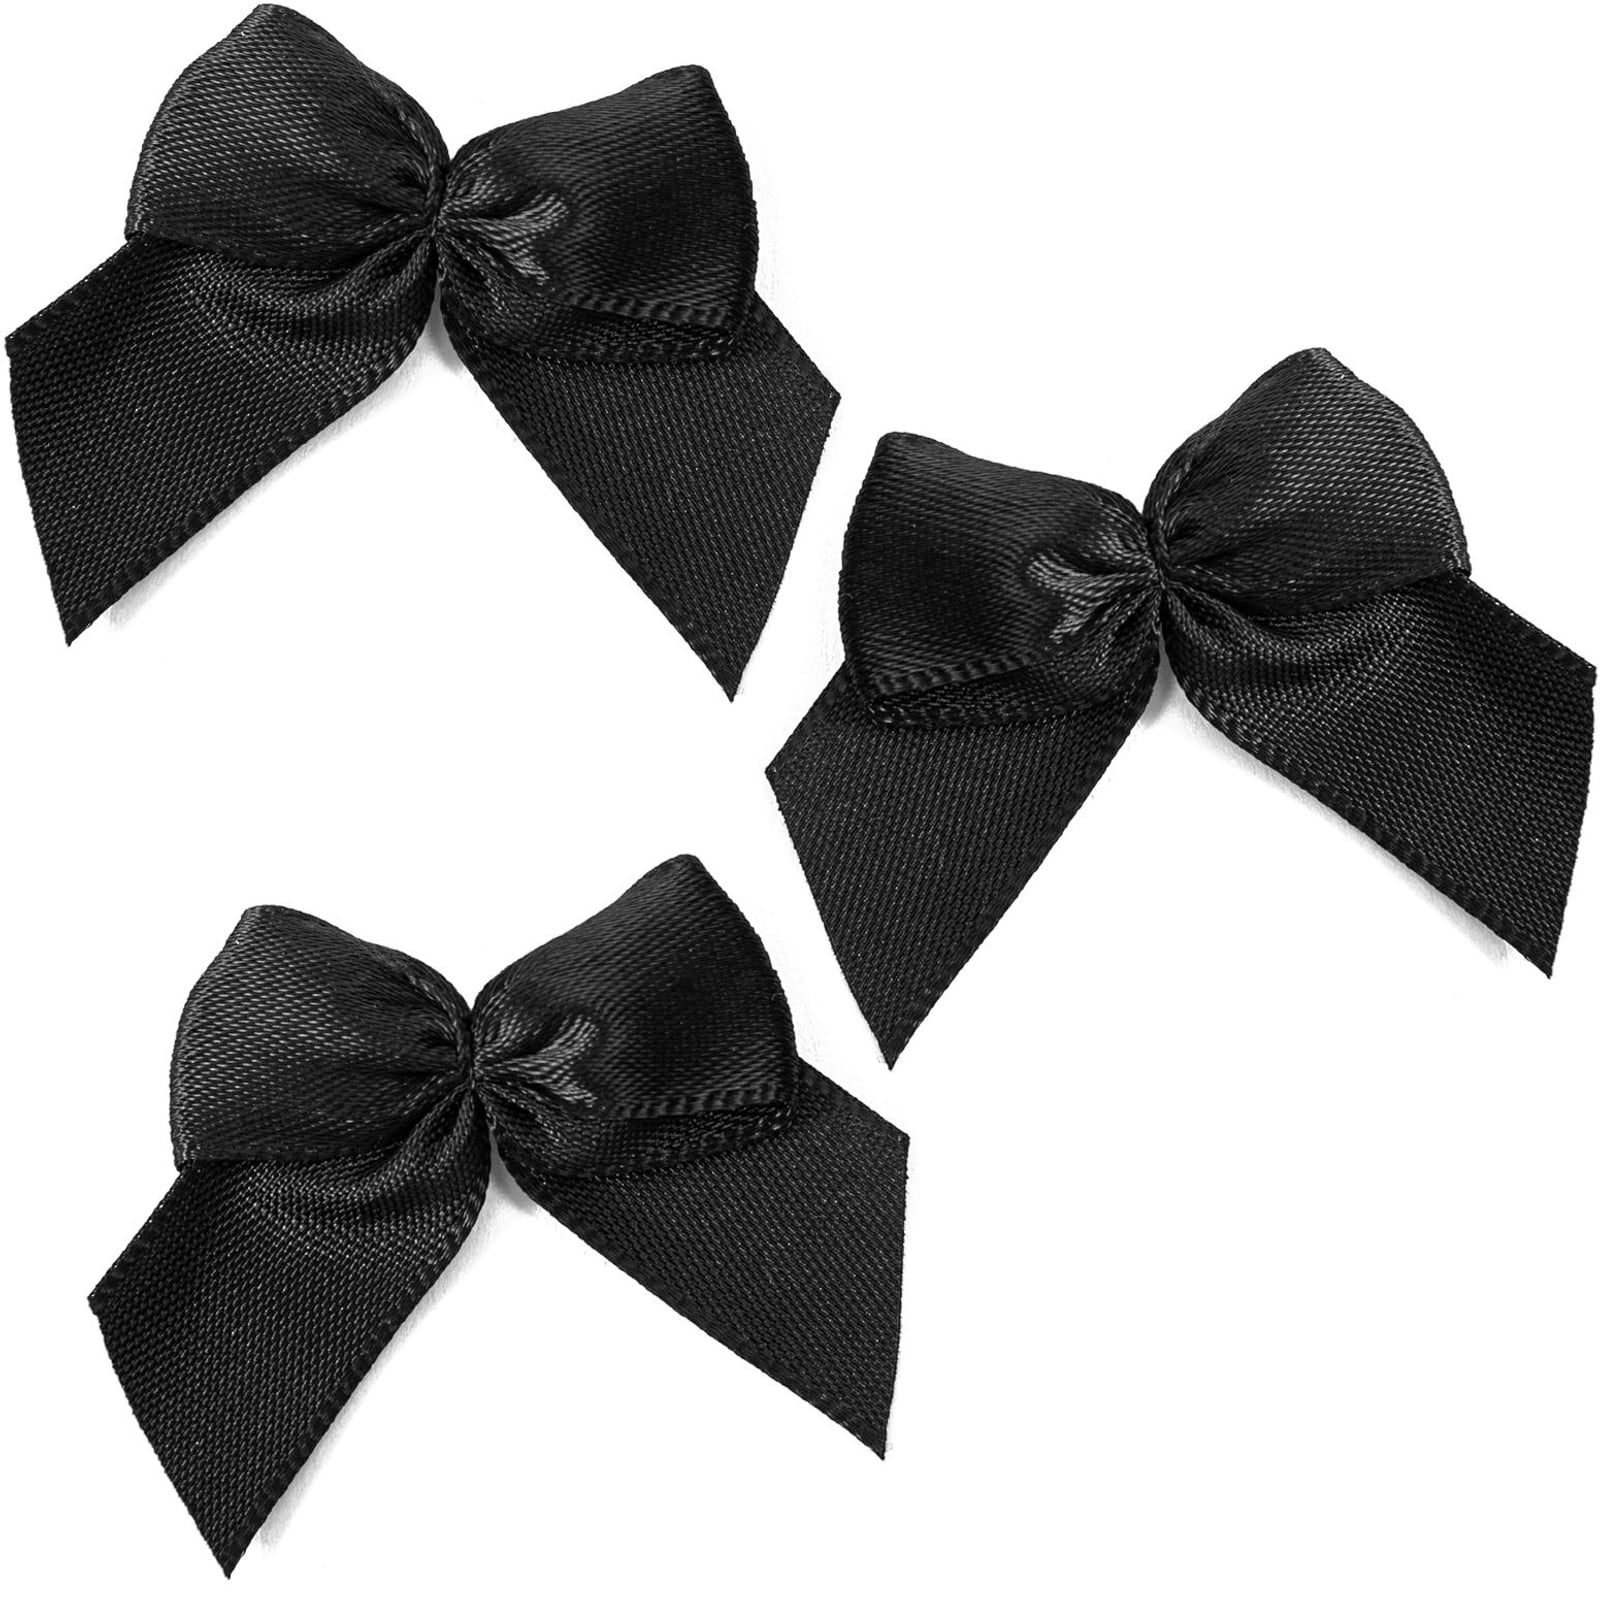  Black Ribbon For Gift Wrapping Satin Ribbon 3/8